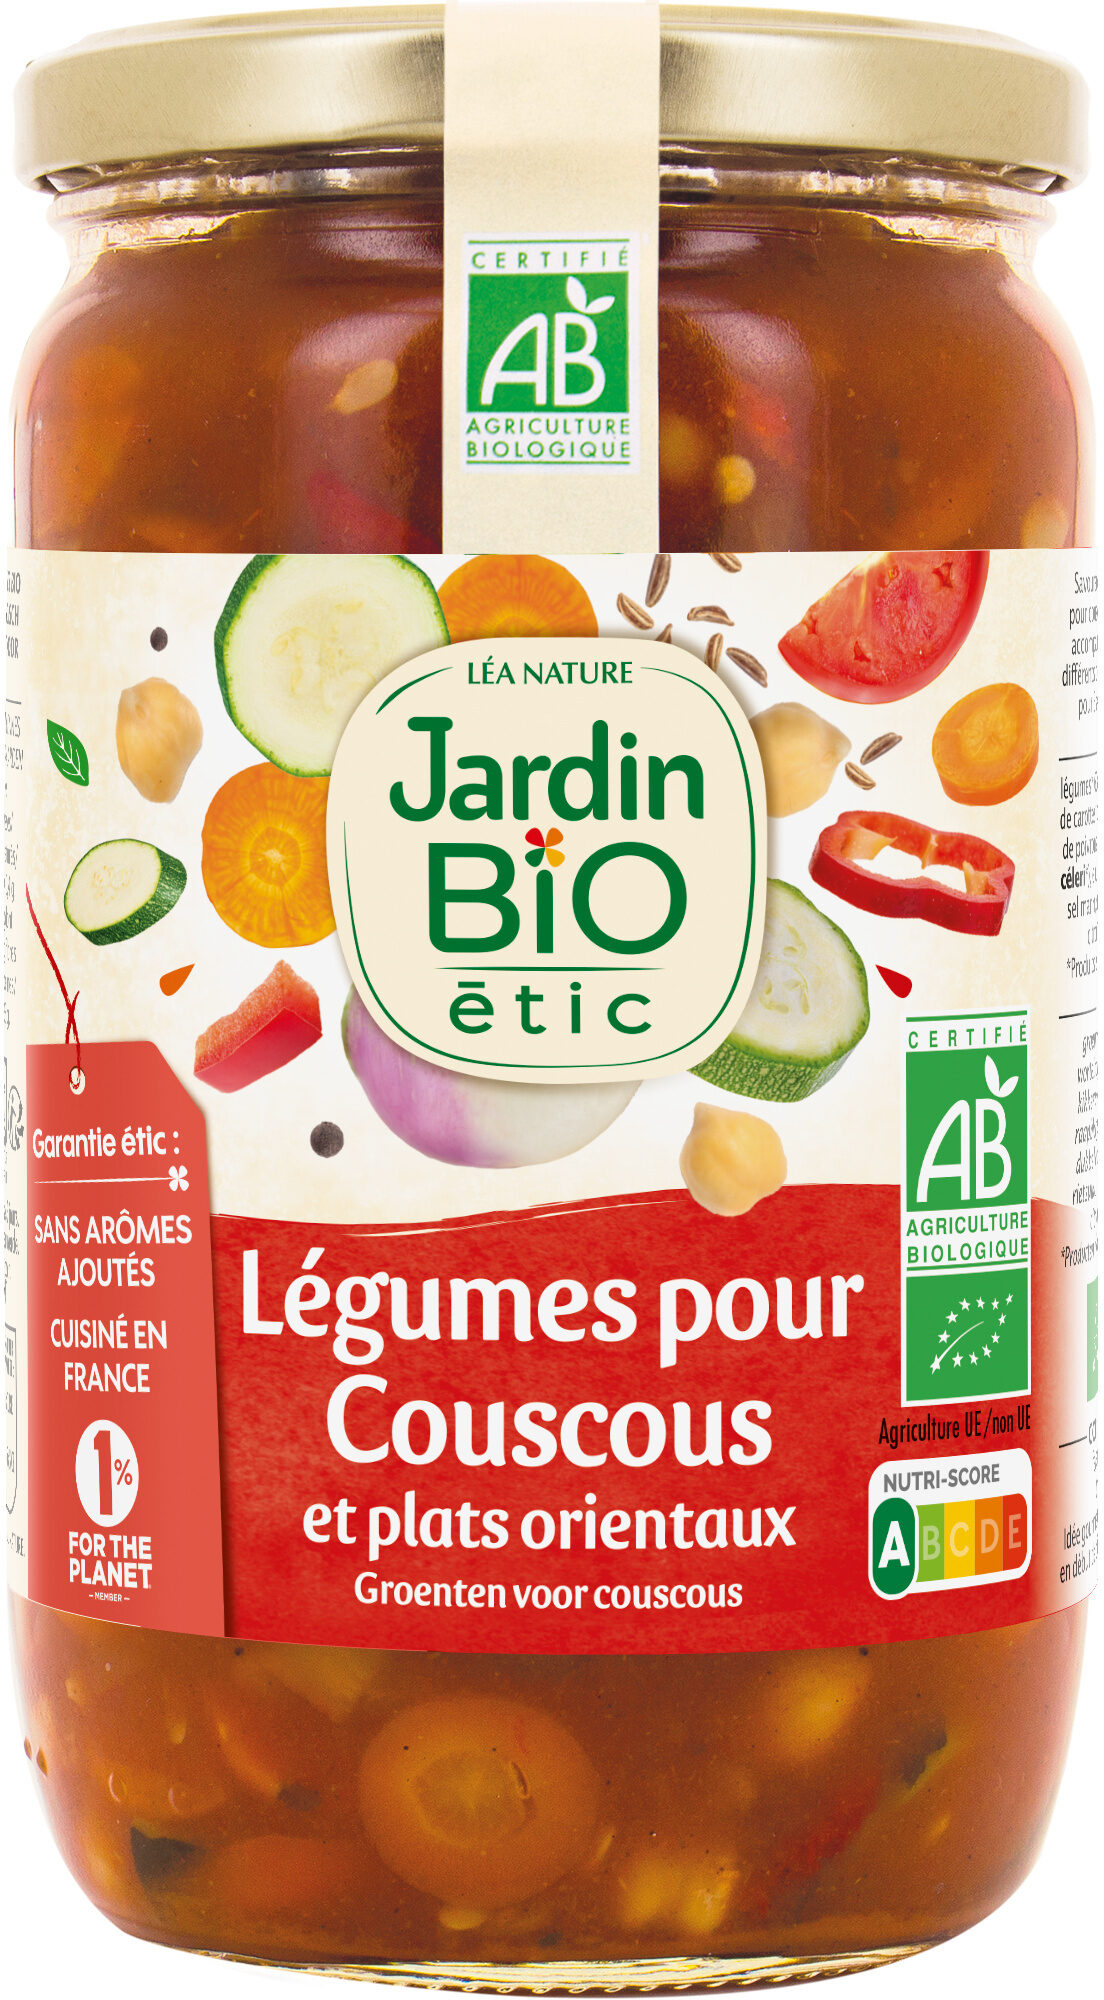 Légumes pour couscous et plats orientaux - Product - fr